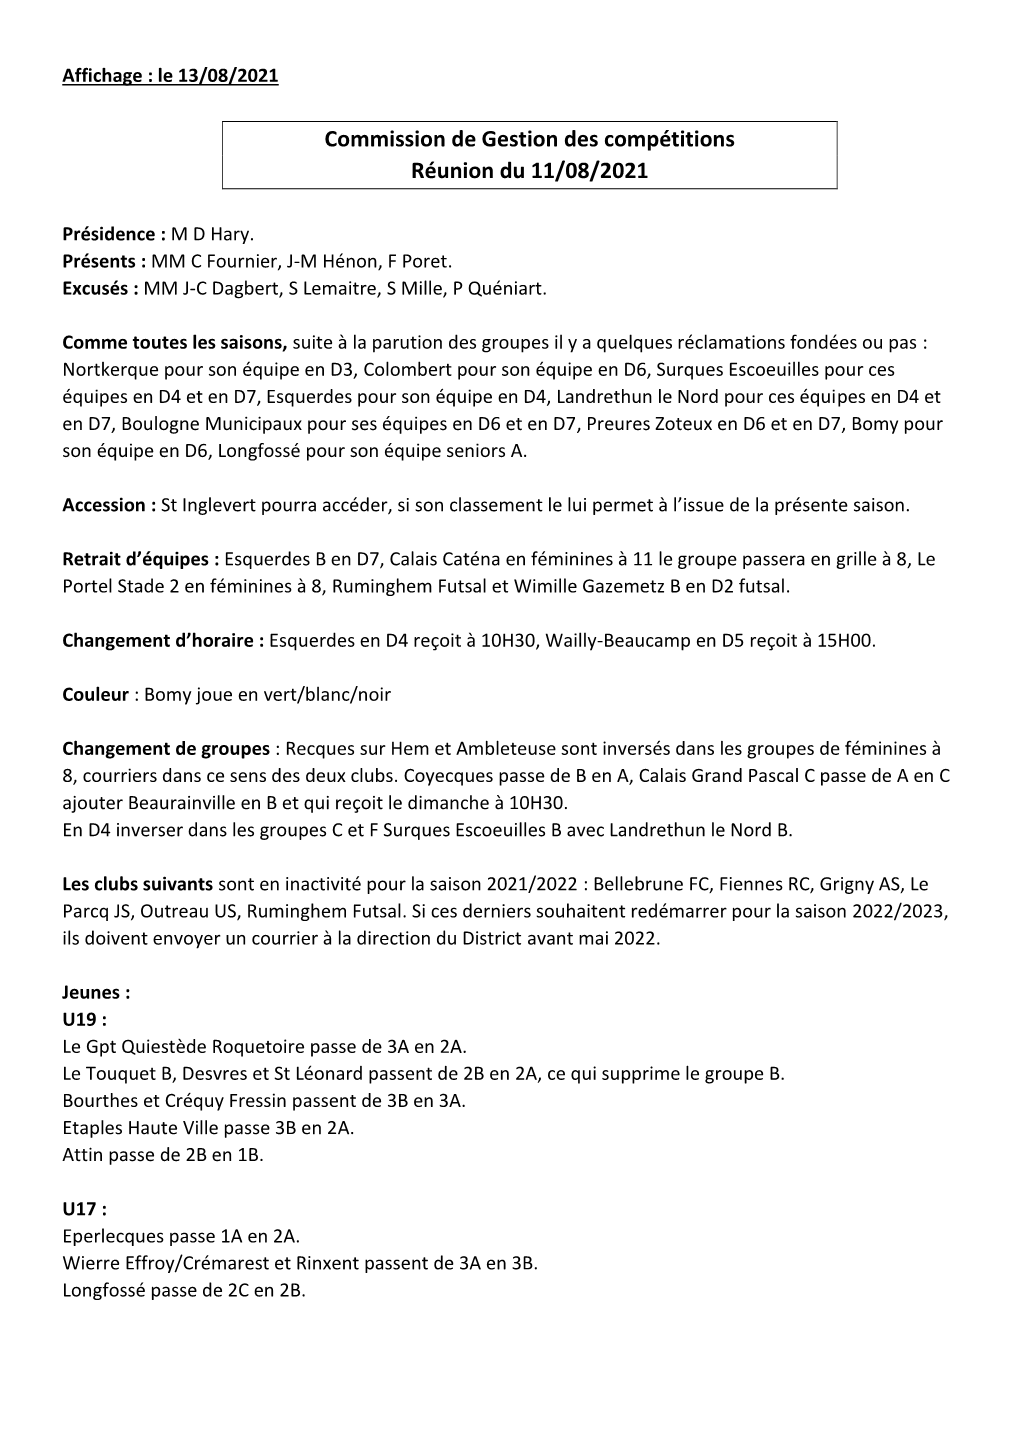 Commission De Gestion Des Compétitions Réunion Du 11/08/2021